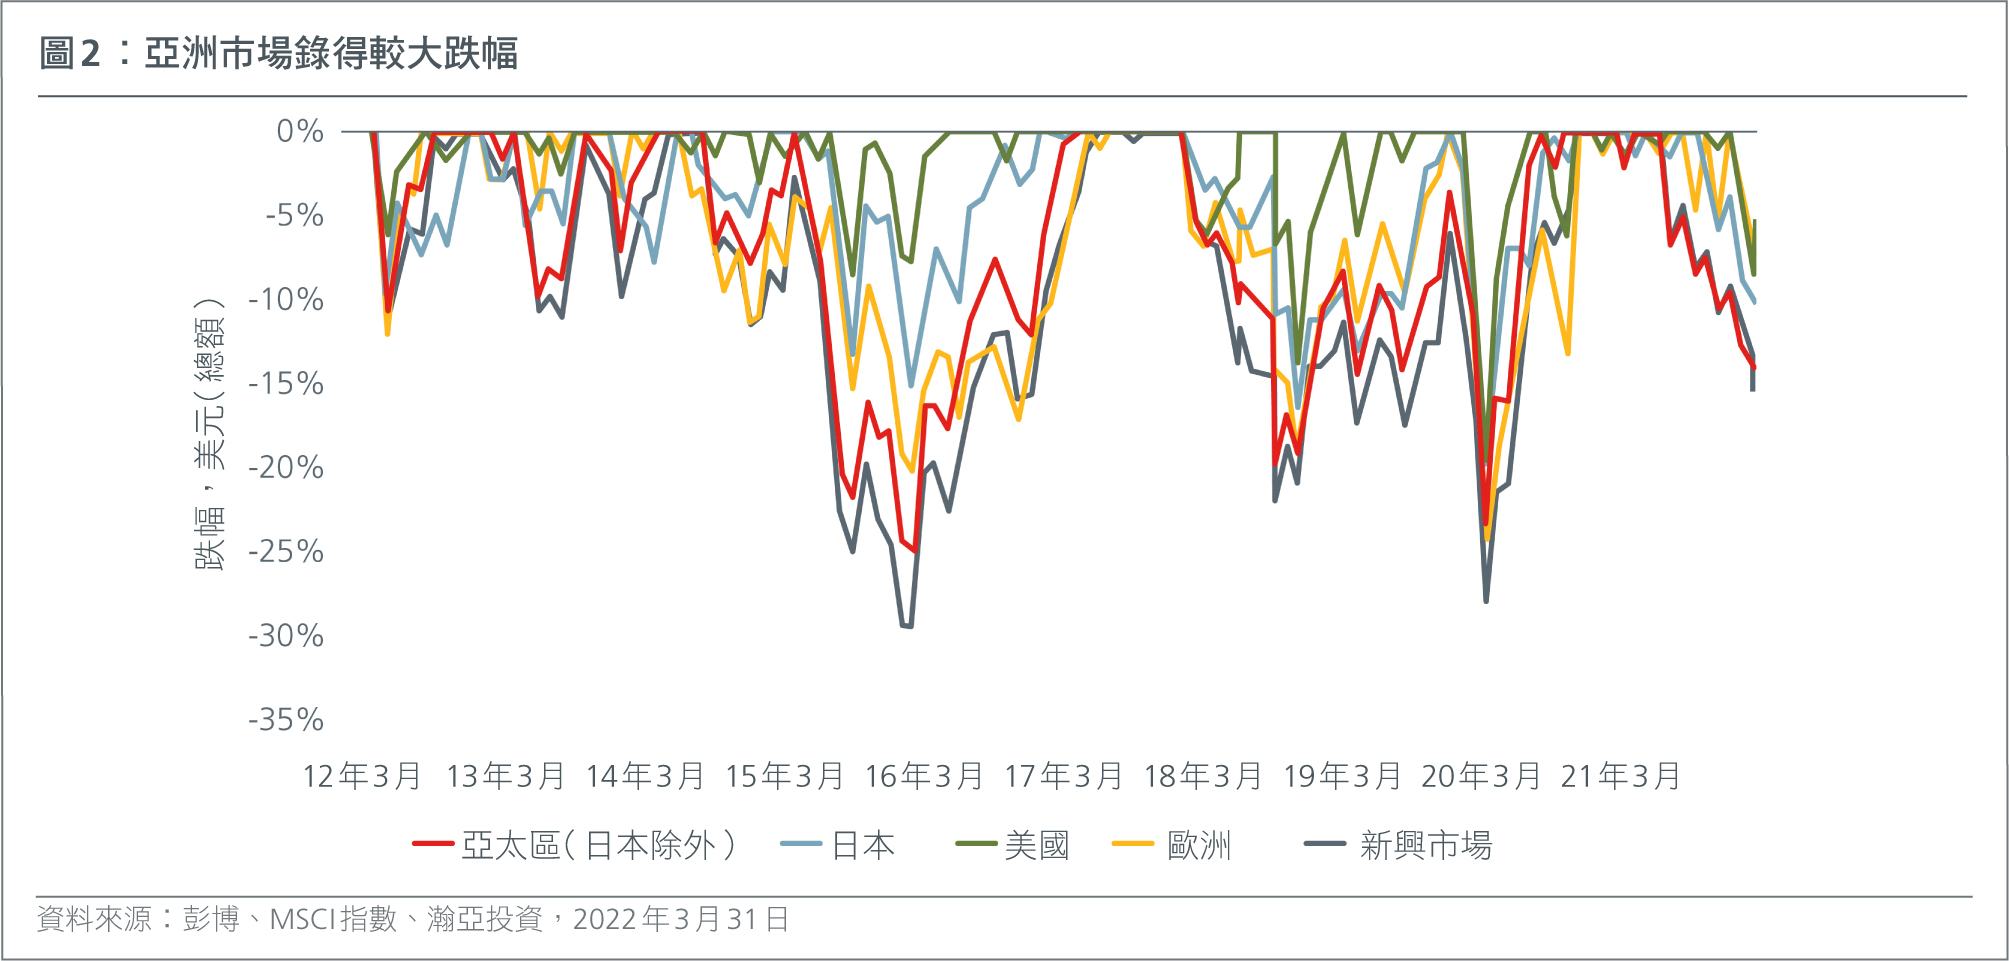 Asian markets endure higher drawdowns